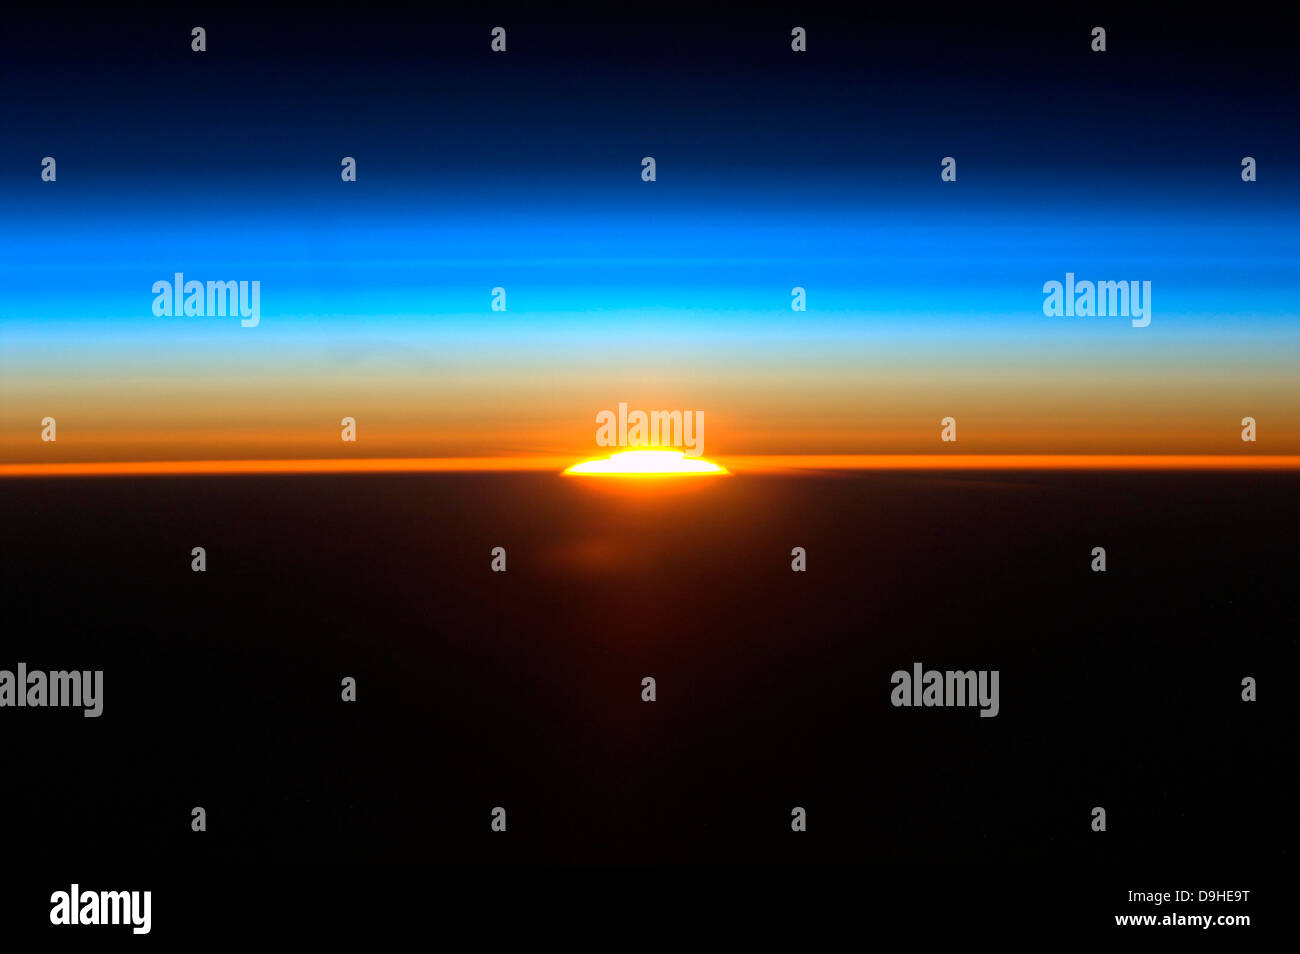 Sunrise come visto dalla stazione spaziale internazionale. Foto Stock